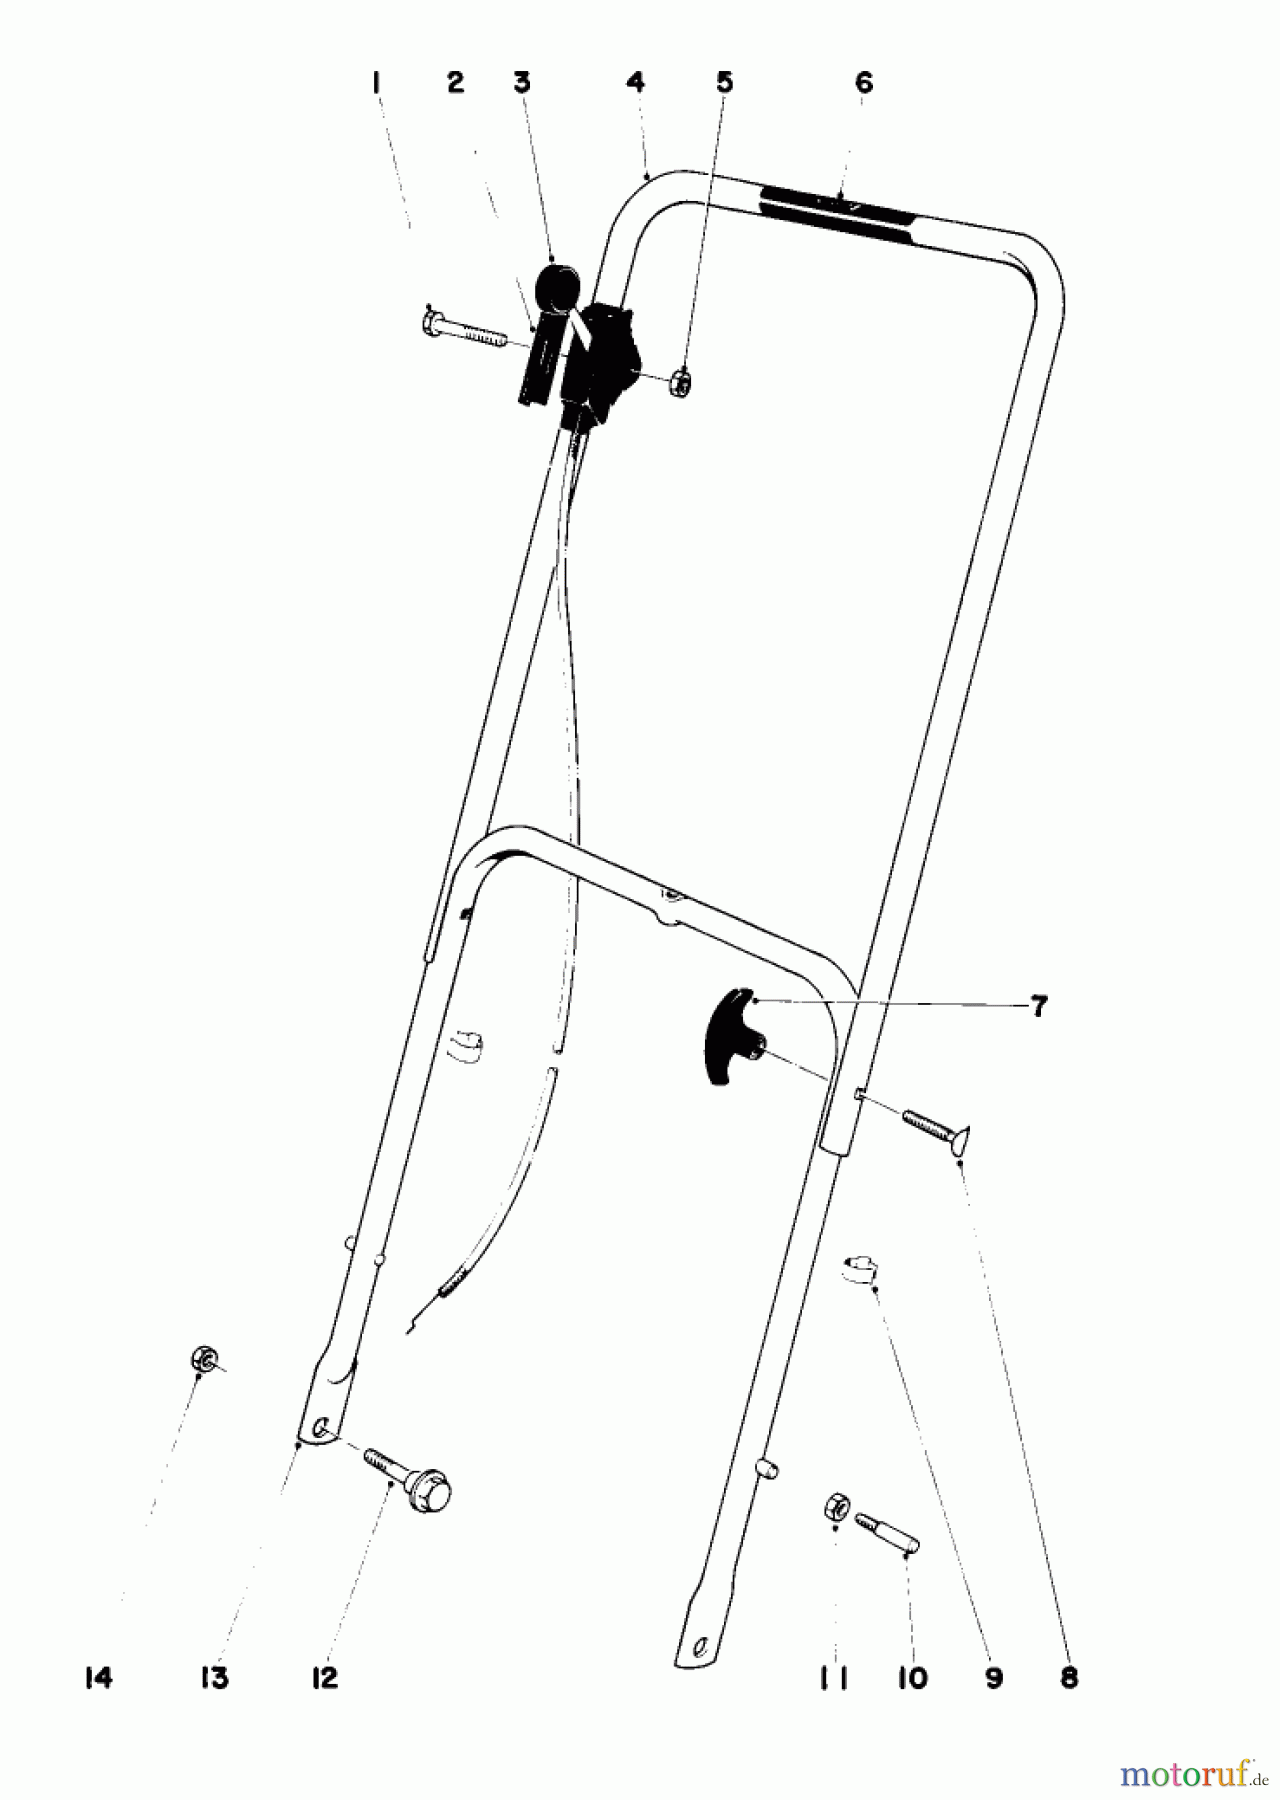  Toro Neu Mowers, Walk-Behind Seite 1 16287 - Toro Whirlwind II Lawnmower, 1979 (9000001-9999999) HANDLE ASSEMBLY MODEL 16067 AND 16155